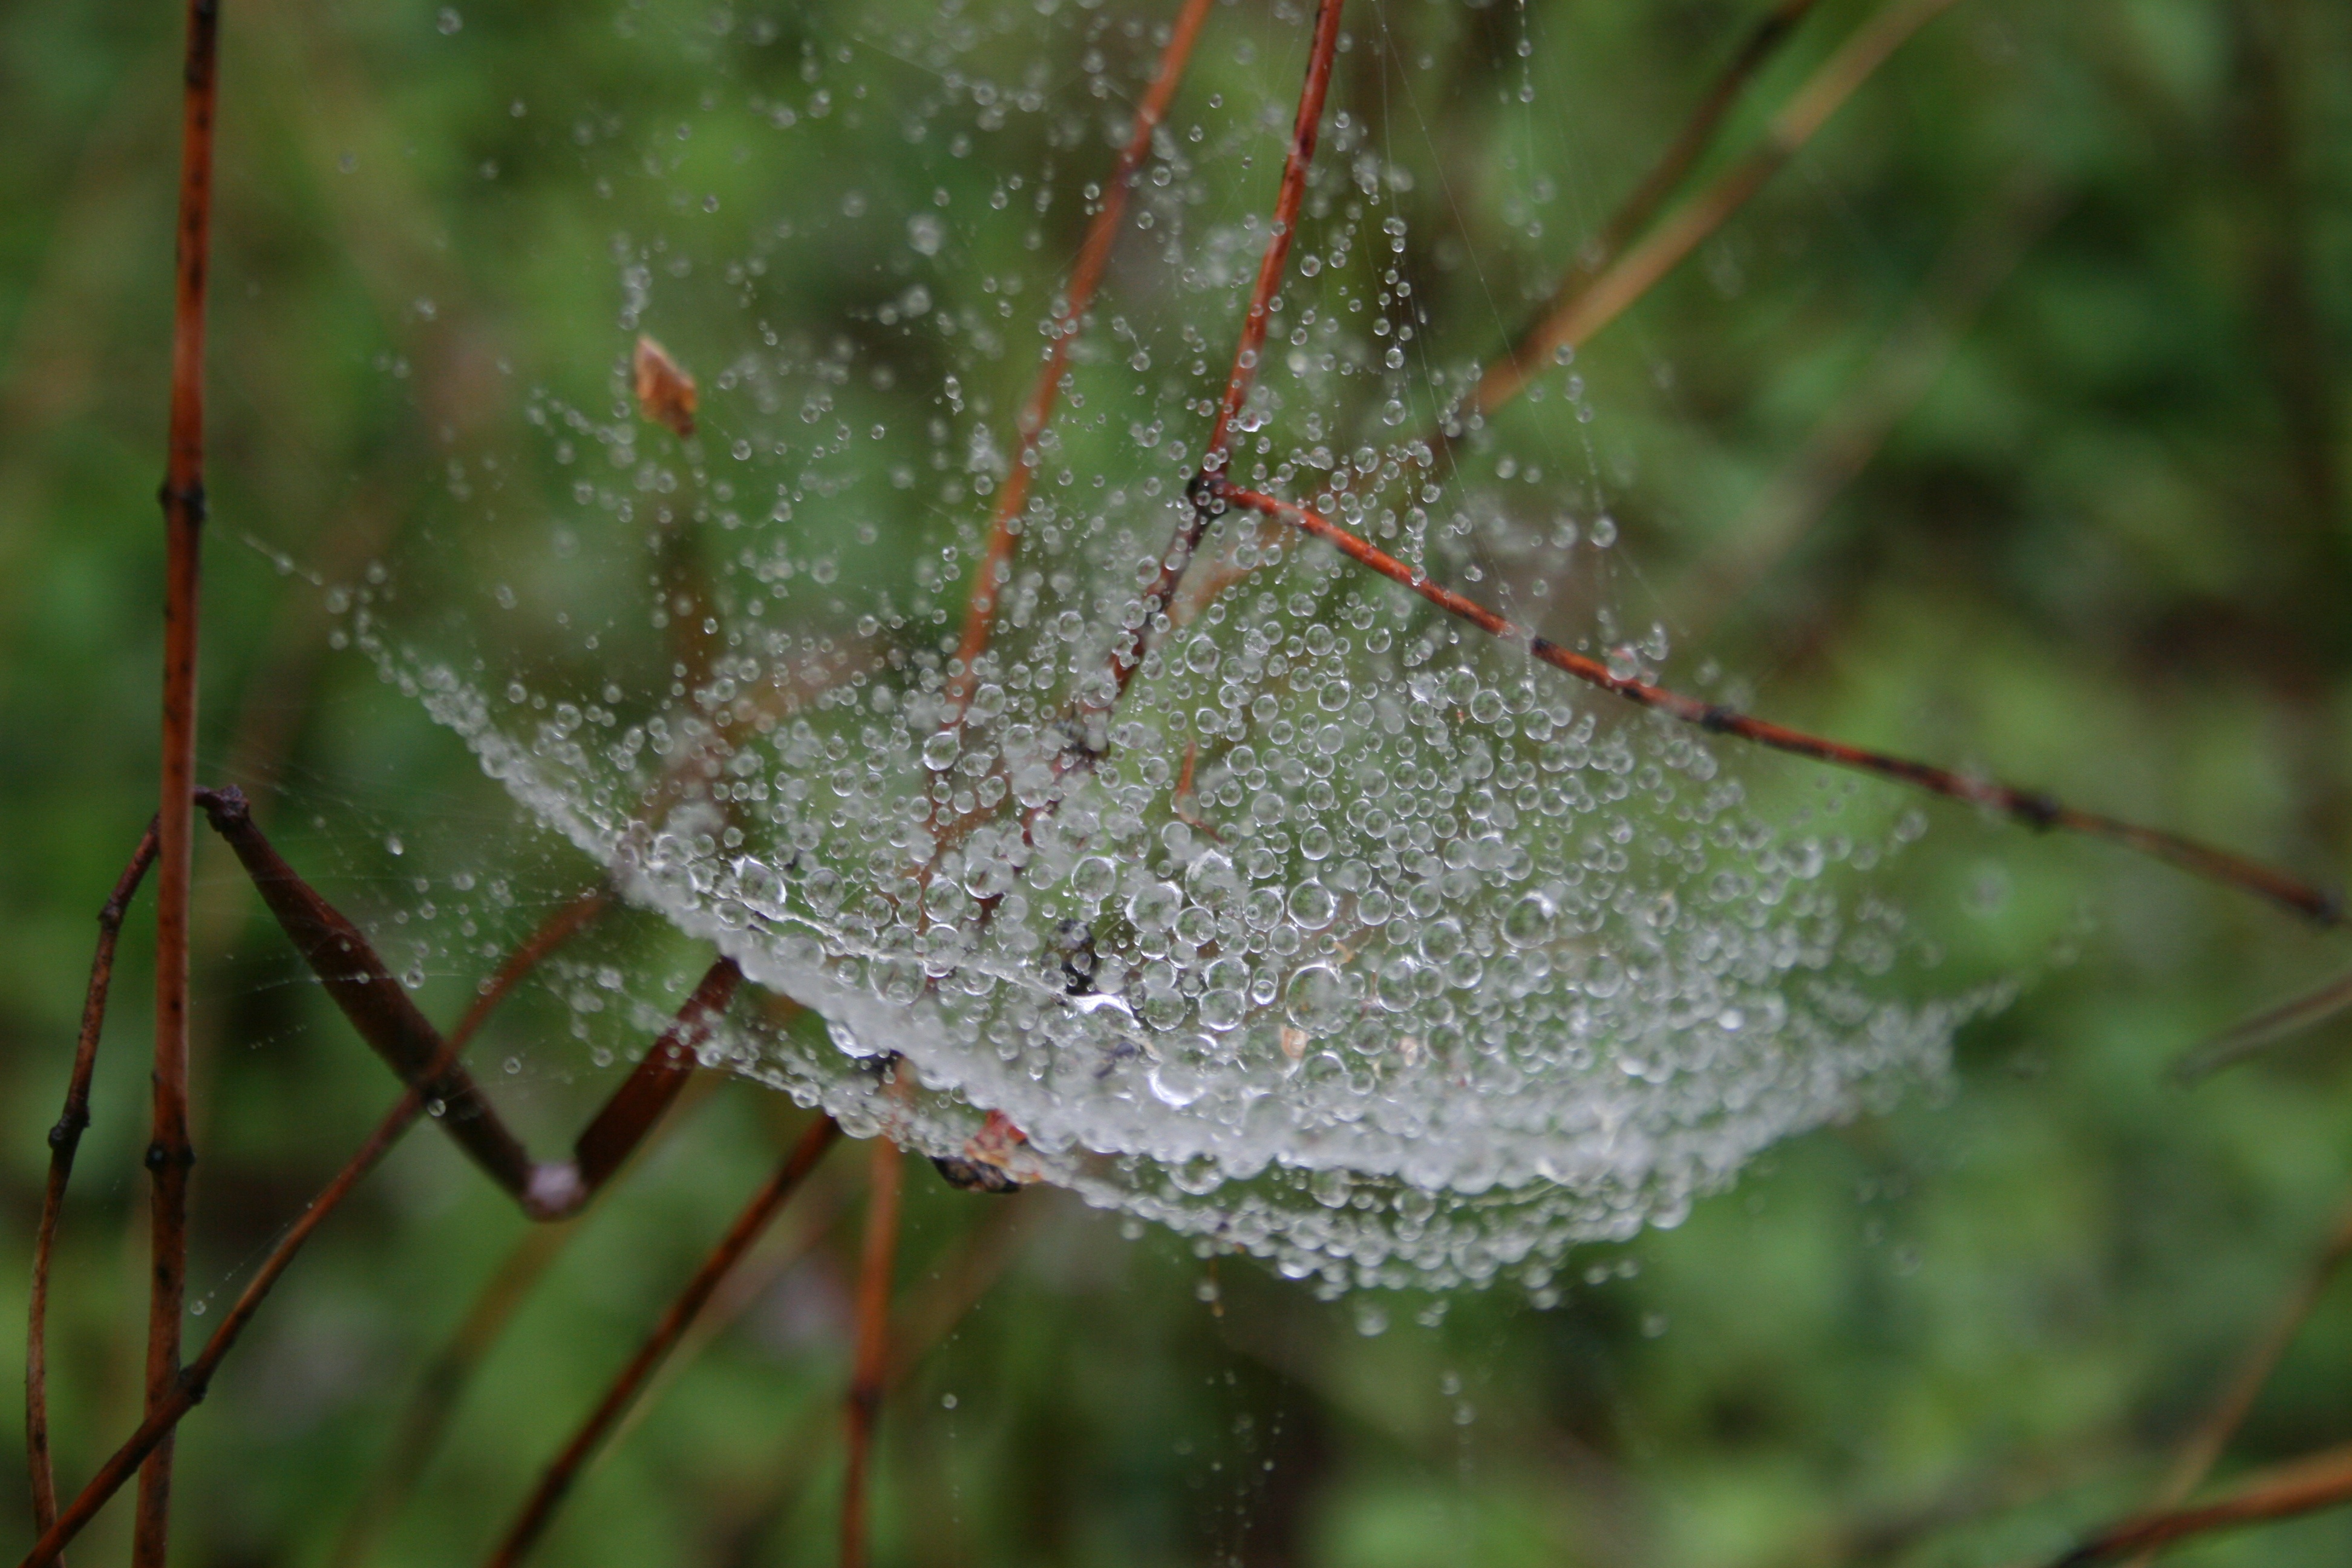 Spider webs glistening with dew